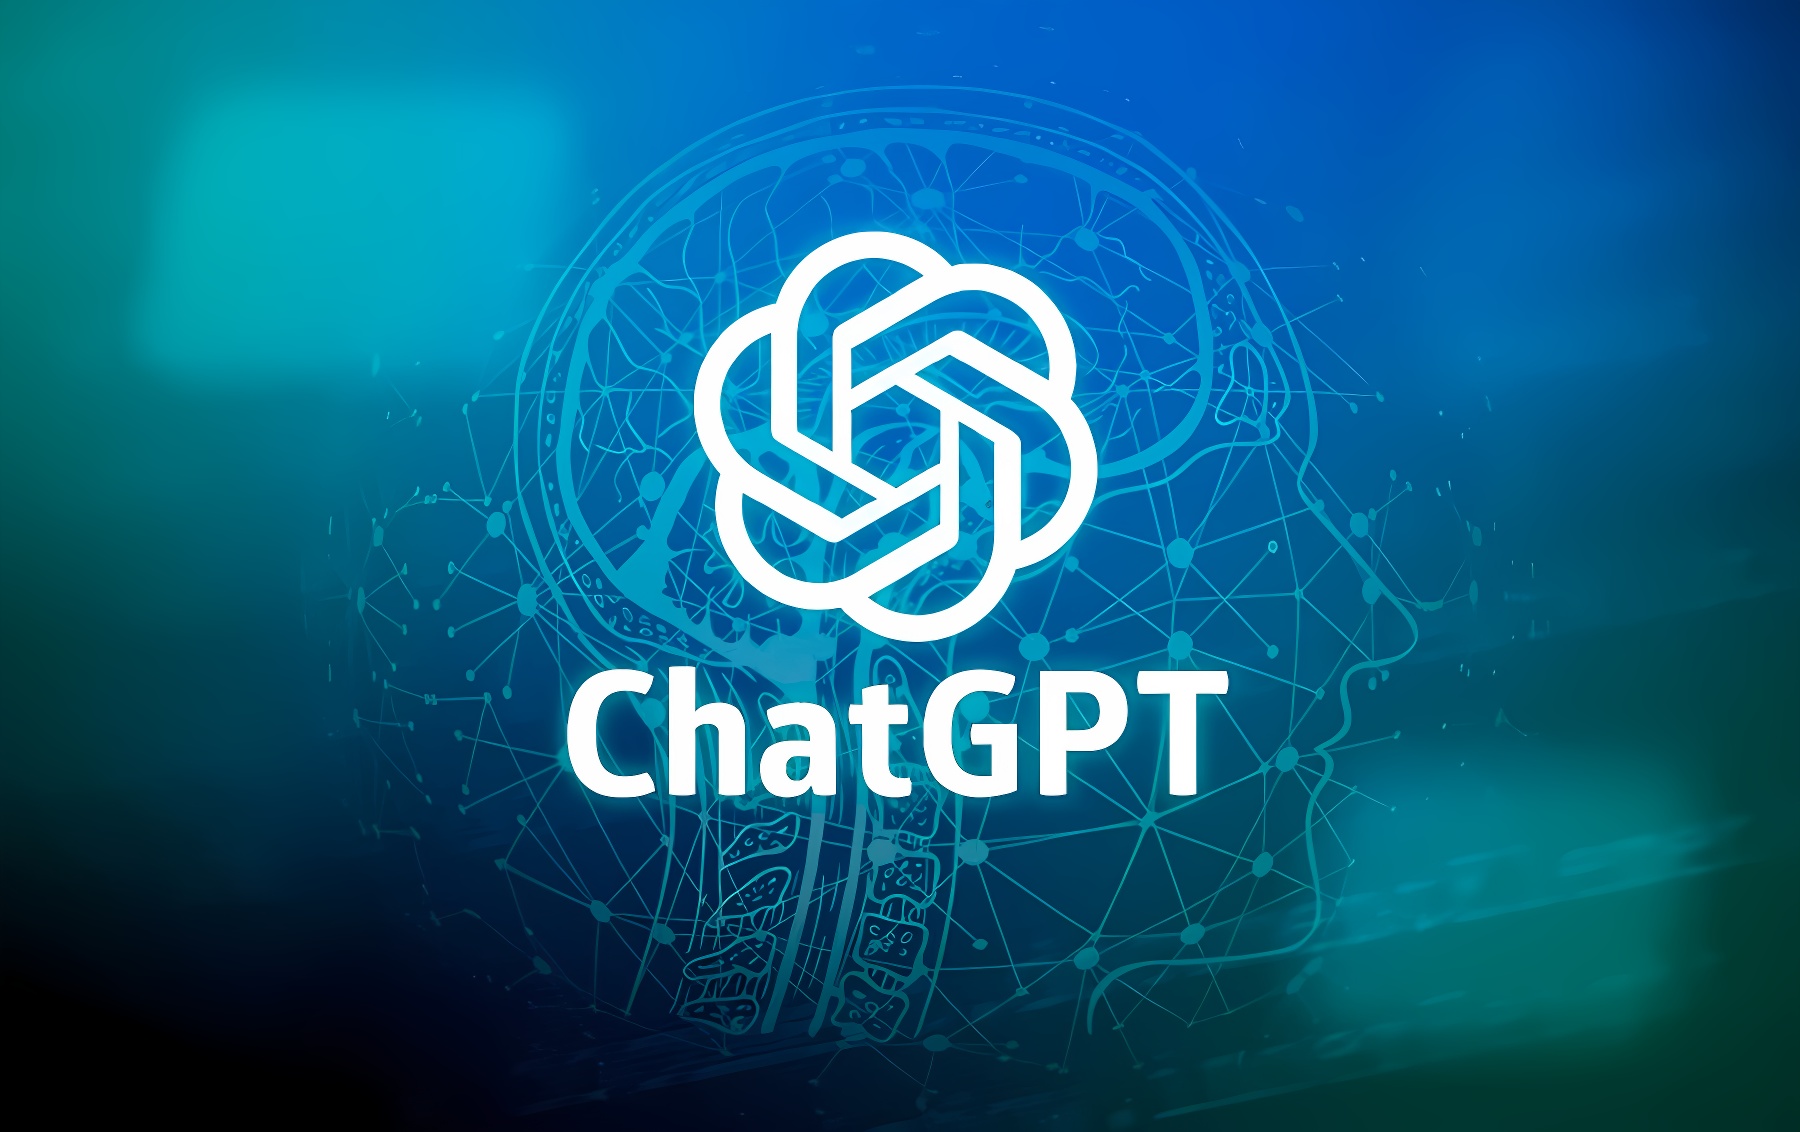 这是一个图形界面，展示了一个中心的复杂图案和“ChatGPT”字样，背景是蓝色调，带有数字化的元素和线条。